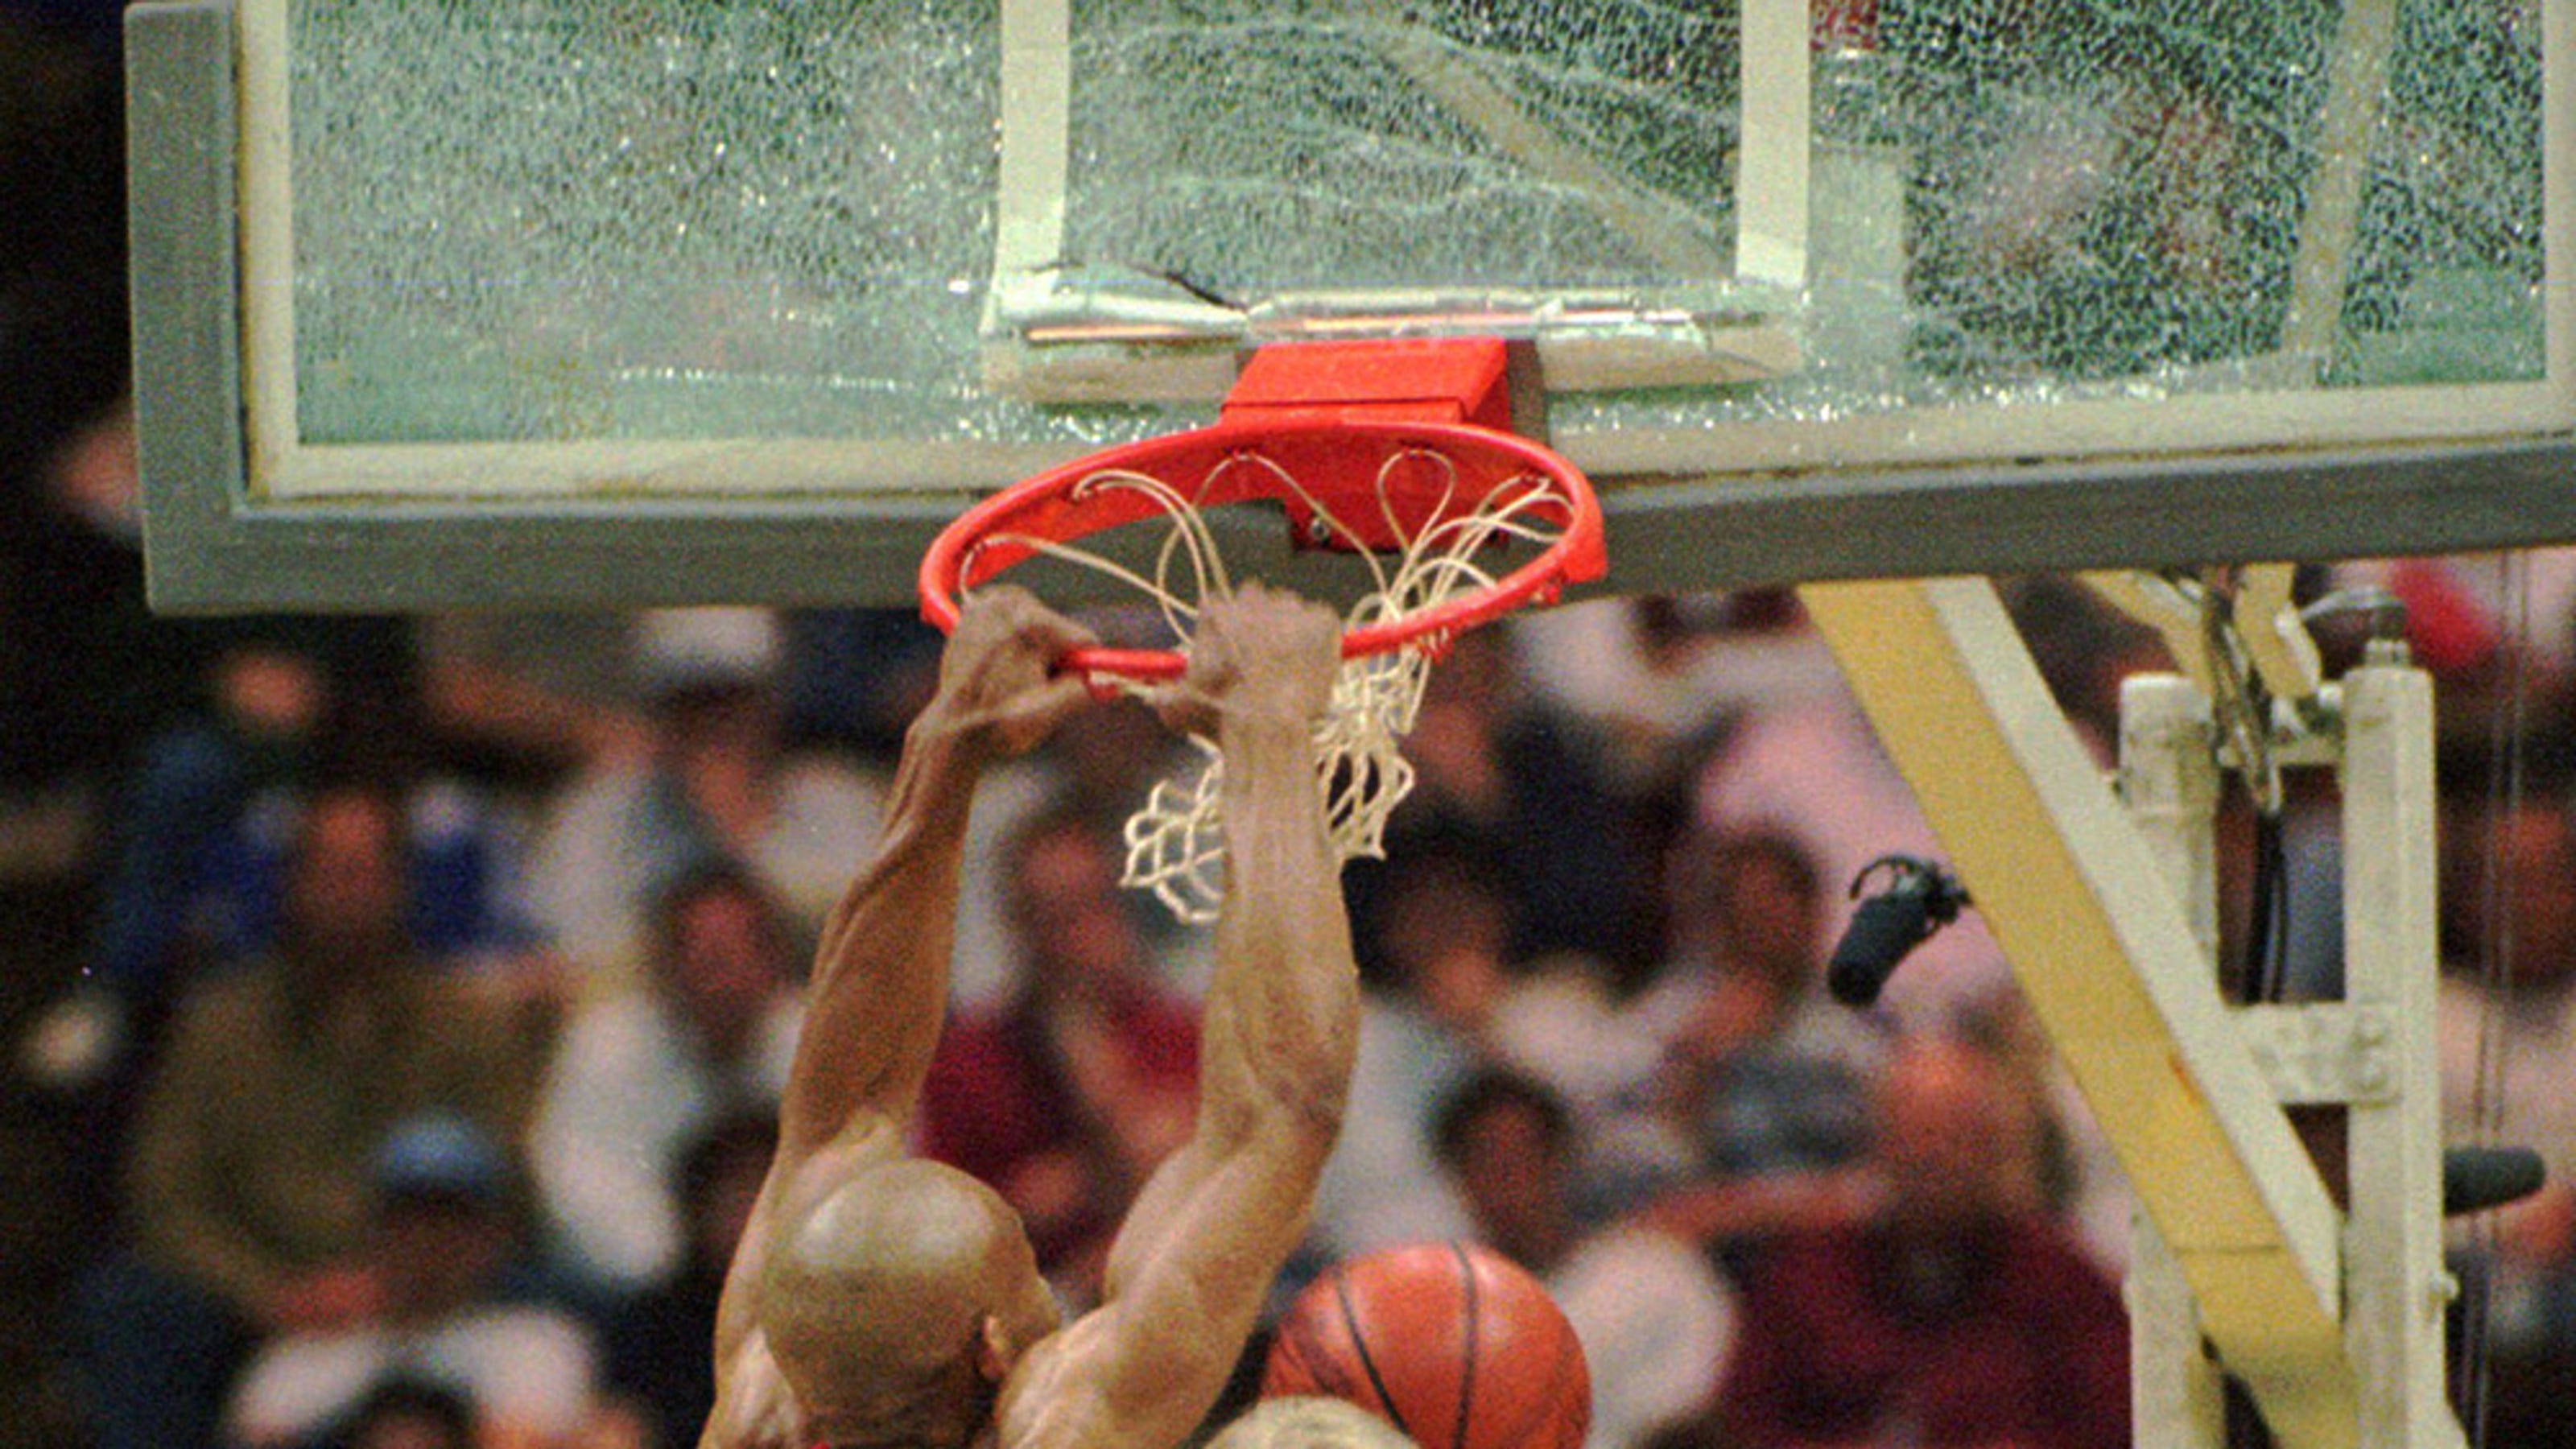 Ex-NBA player on legendary backboard-breaking dunk3200 x 1800